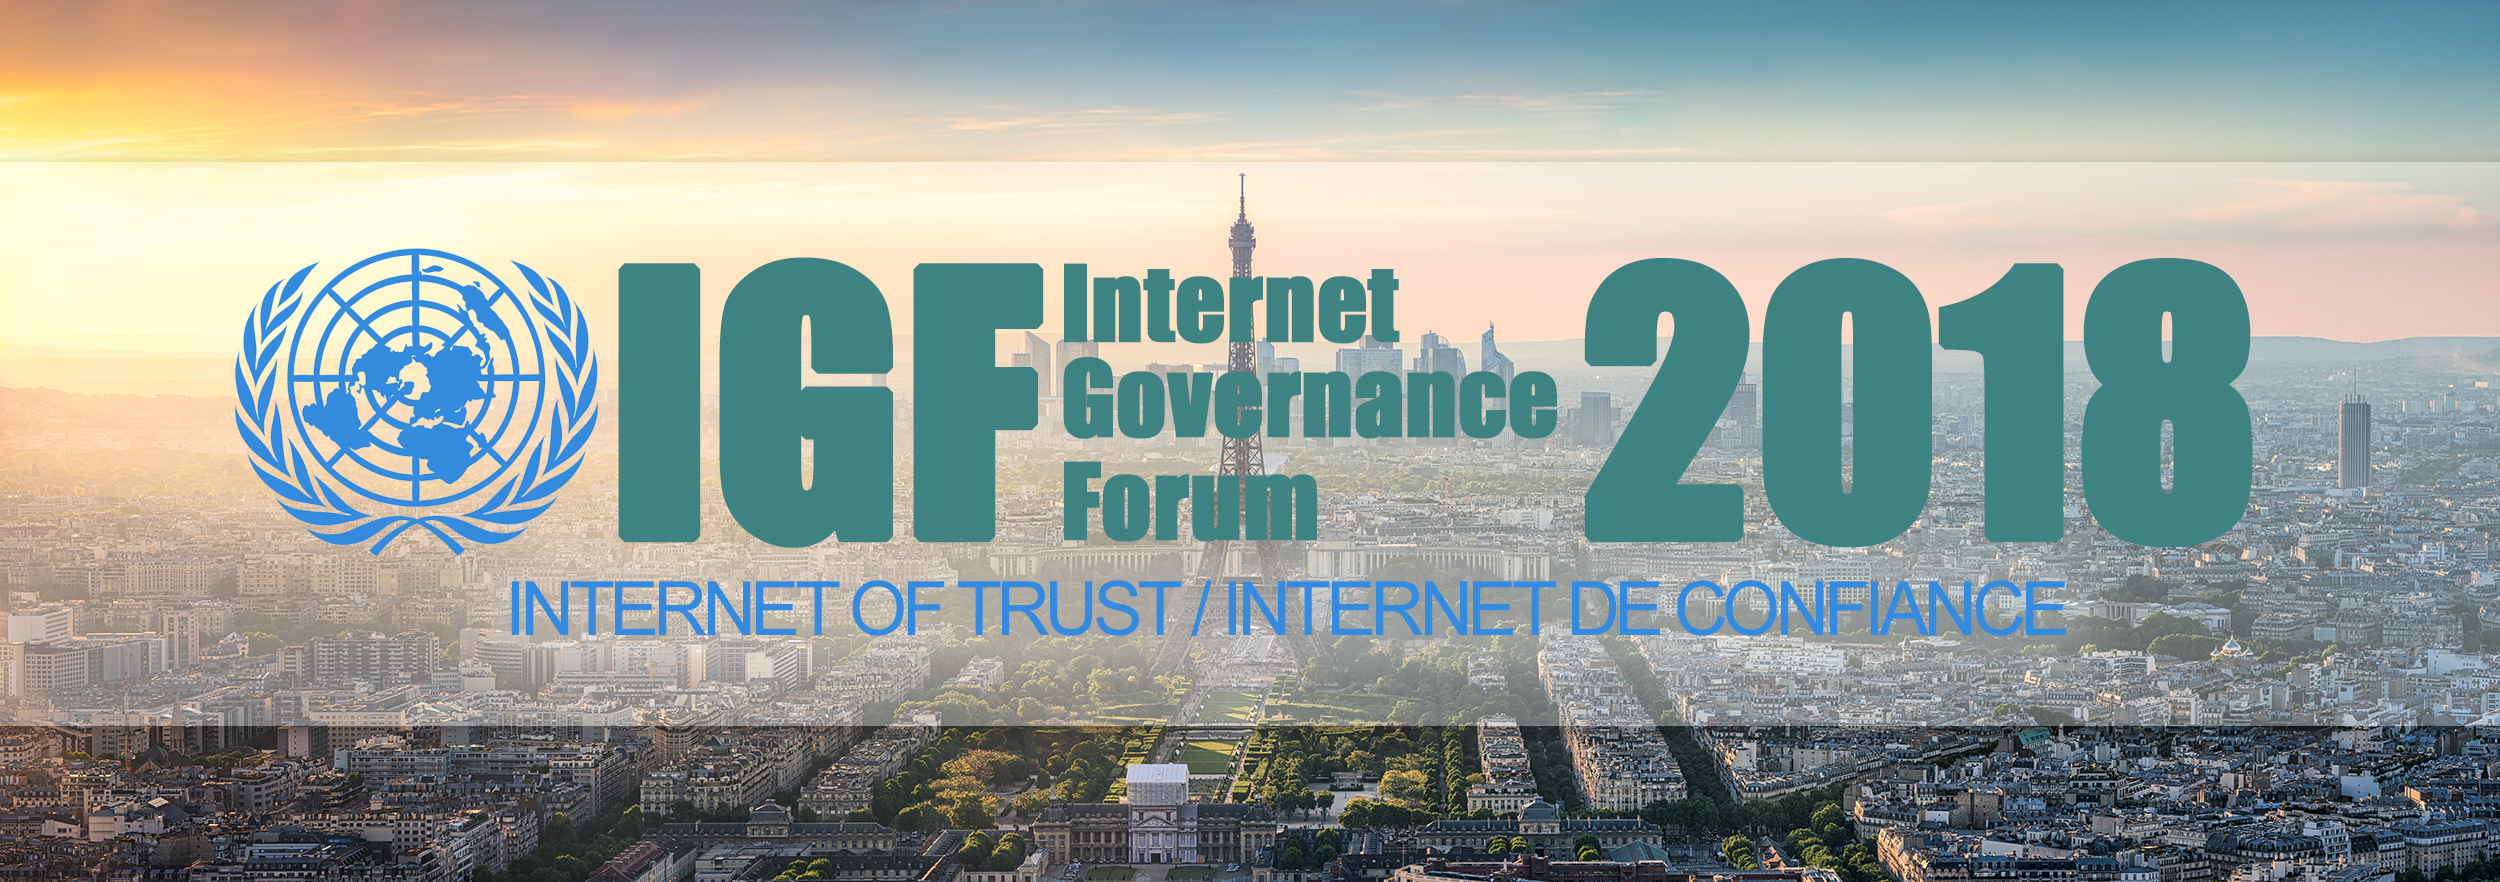 NGI at IGF 2018